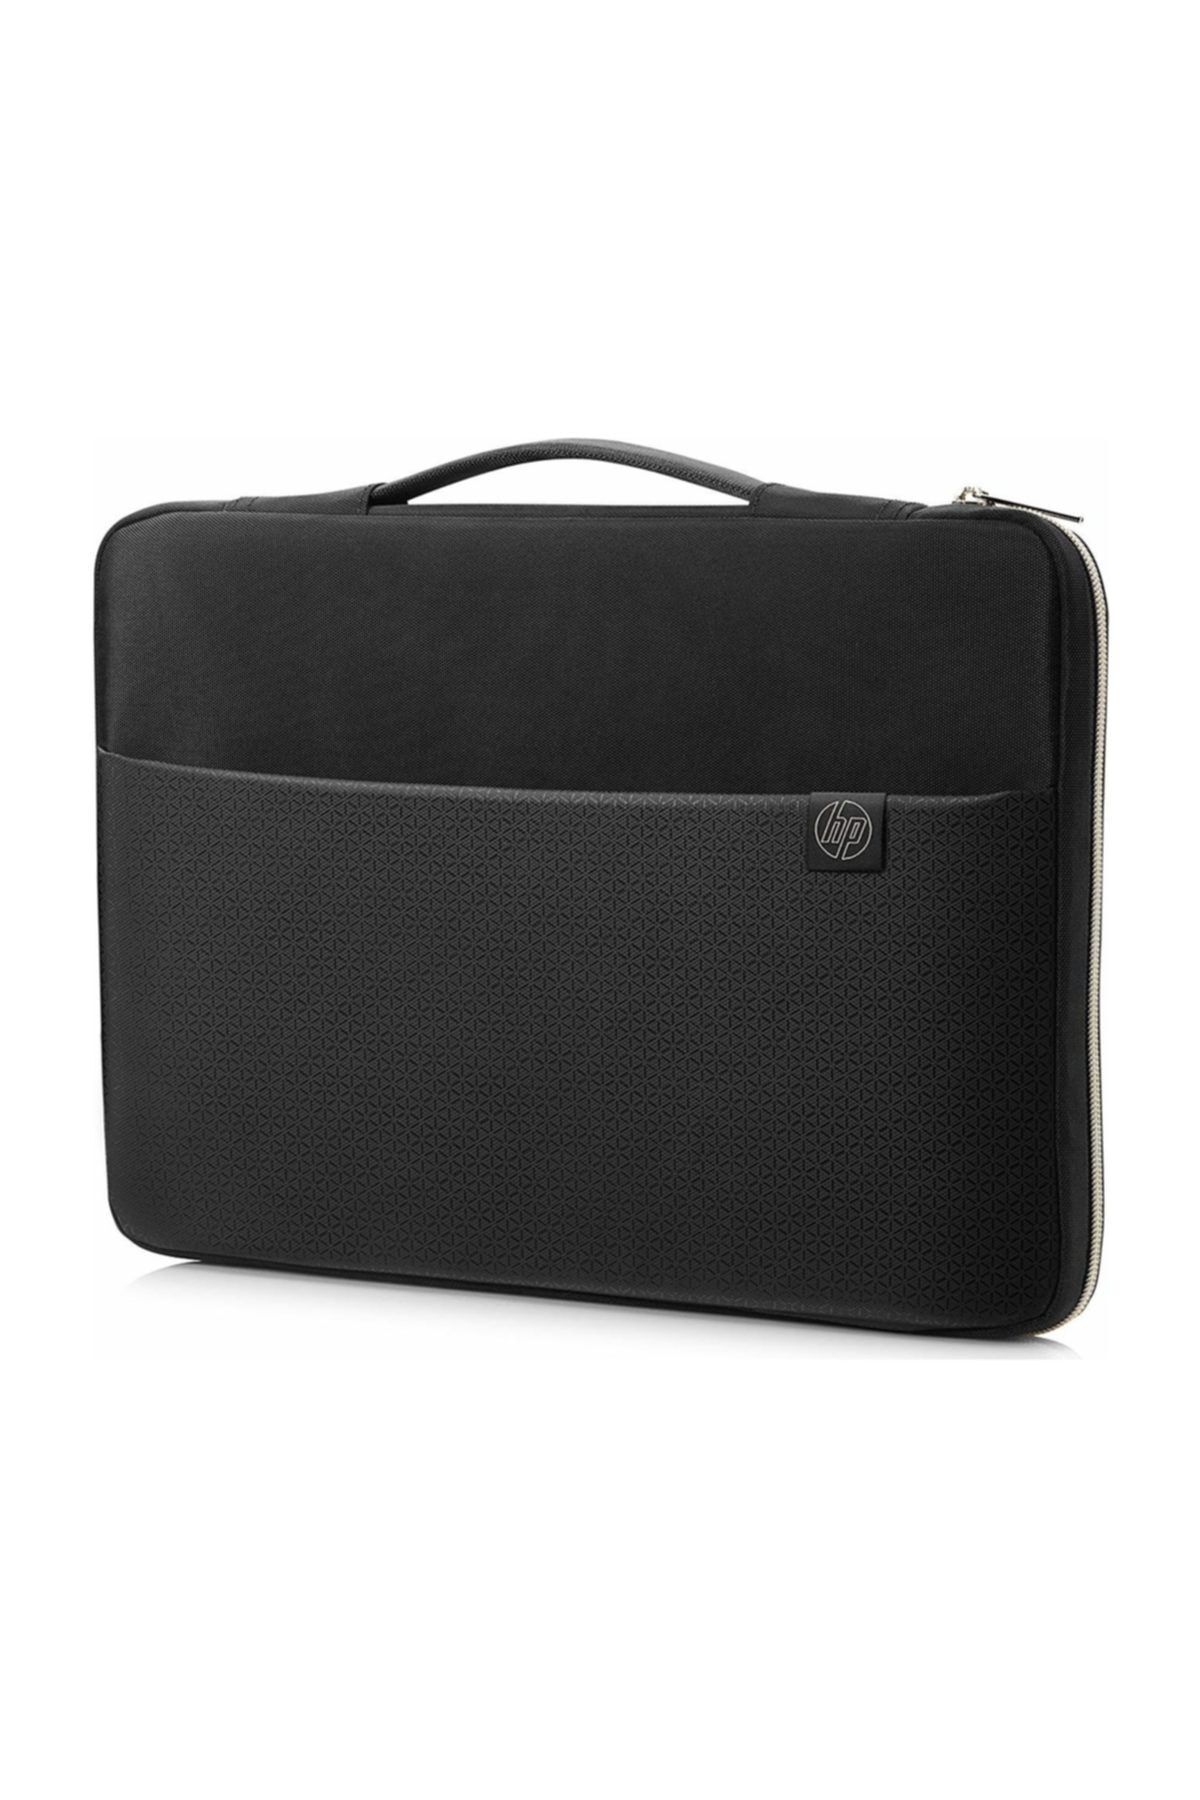 HP 14 Inc Carry Sleeve Notebook Taşıma Kılıfı Siyah 3xd33aa